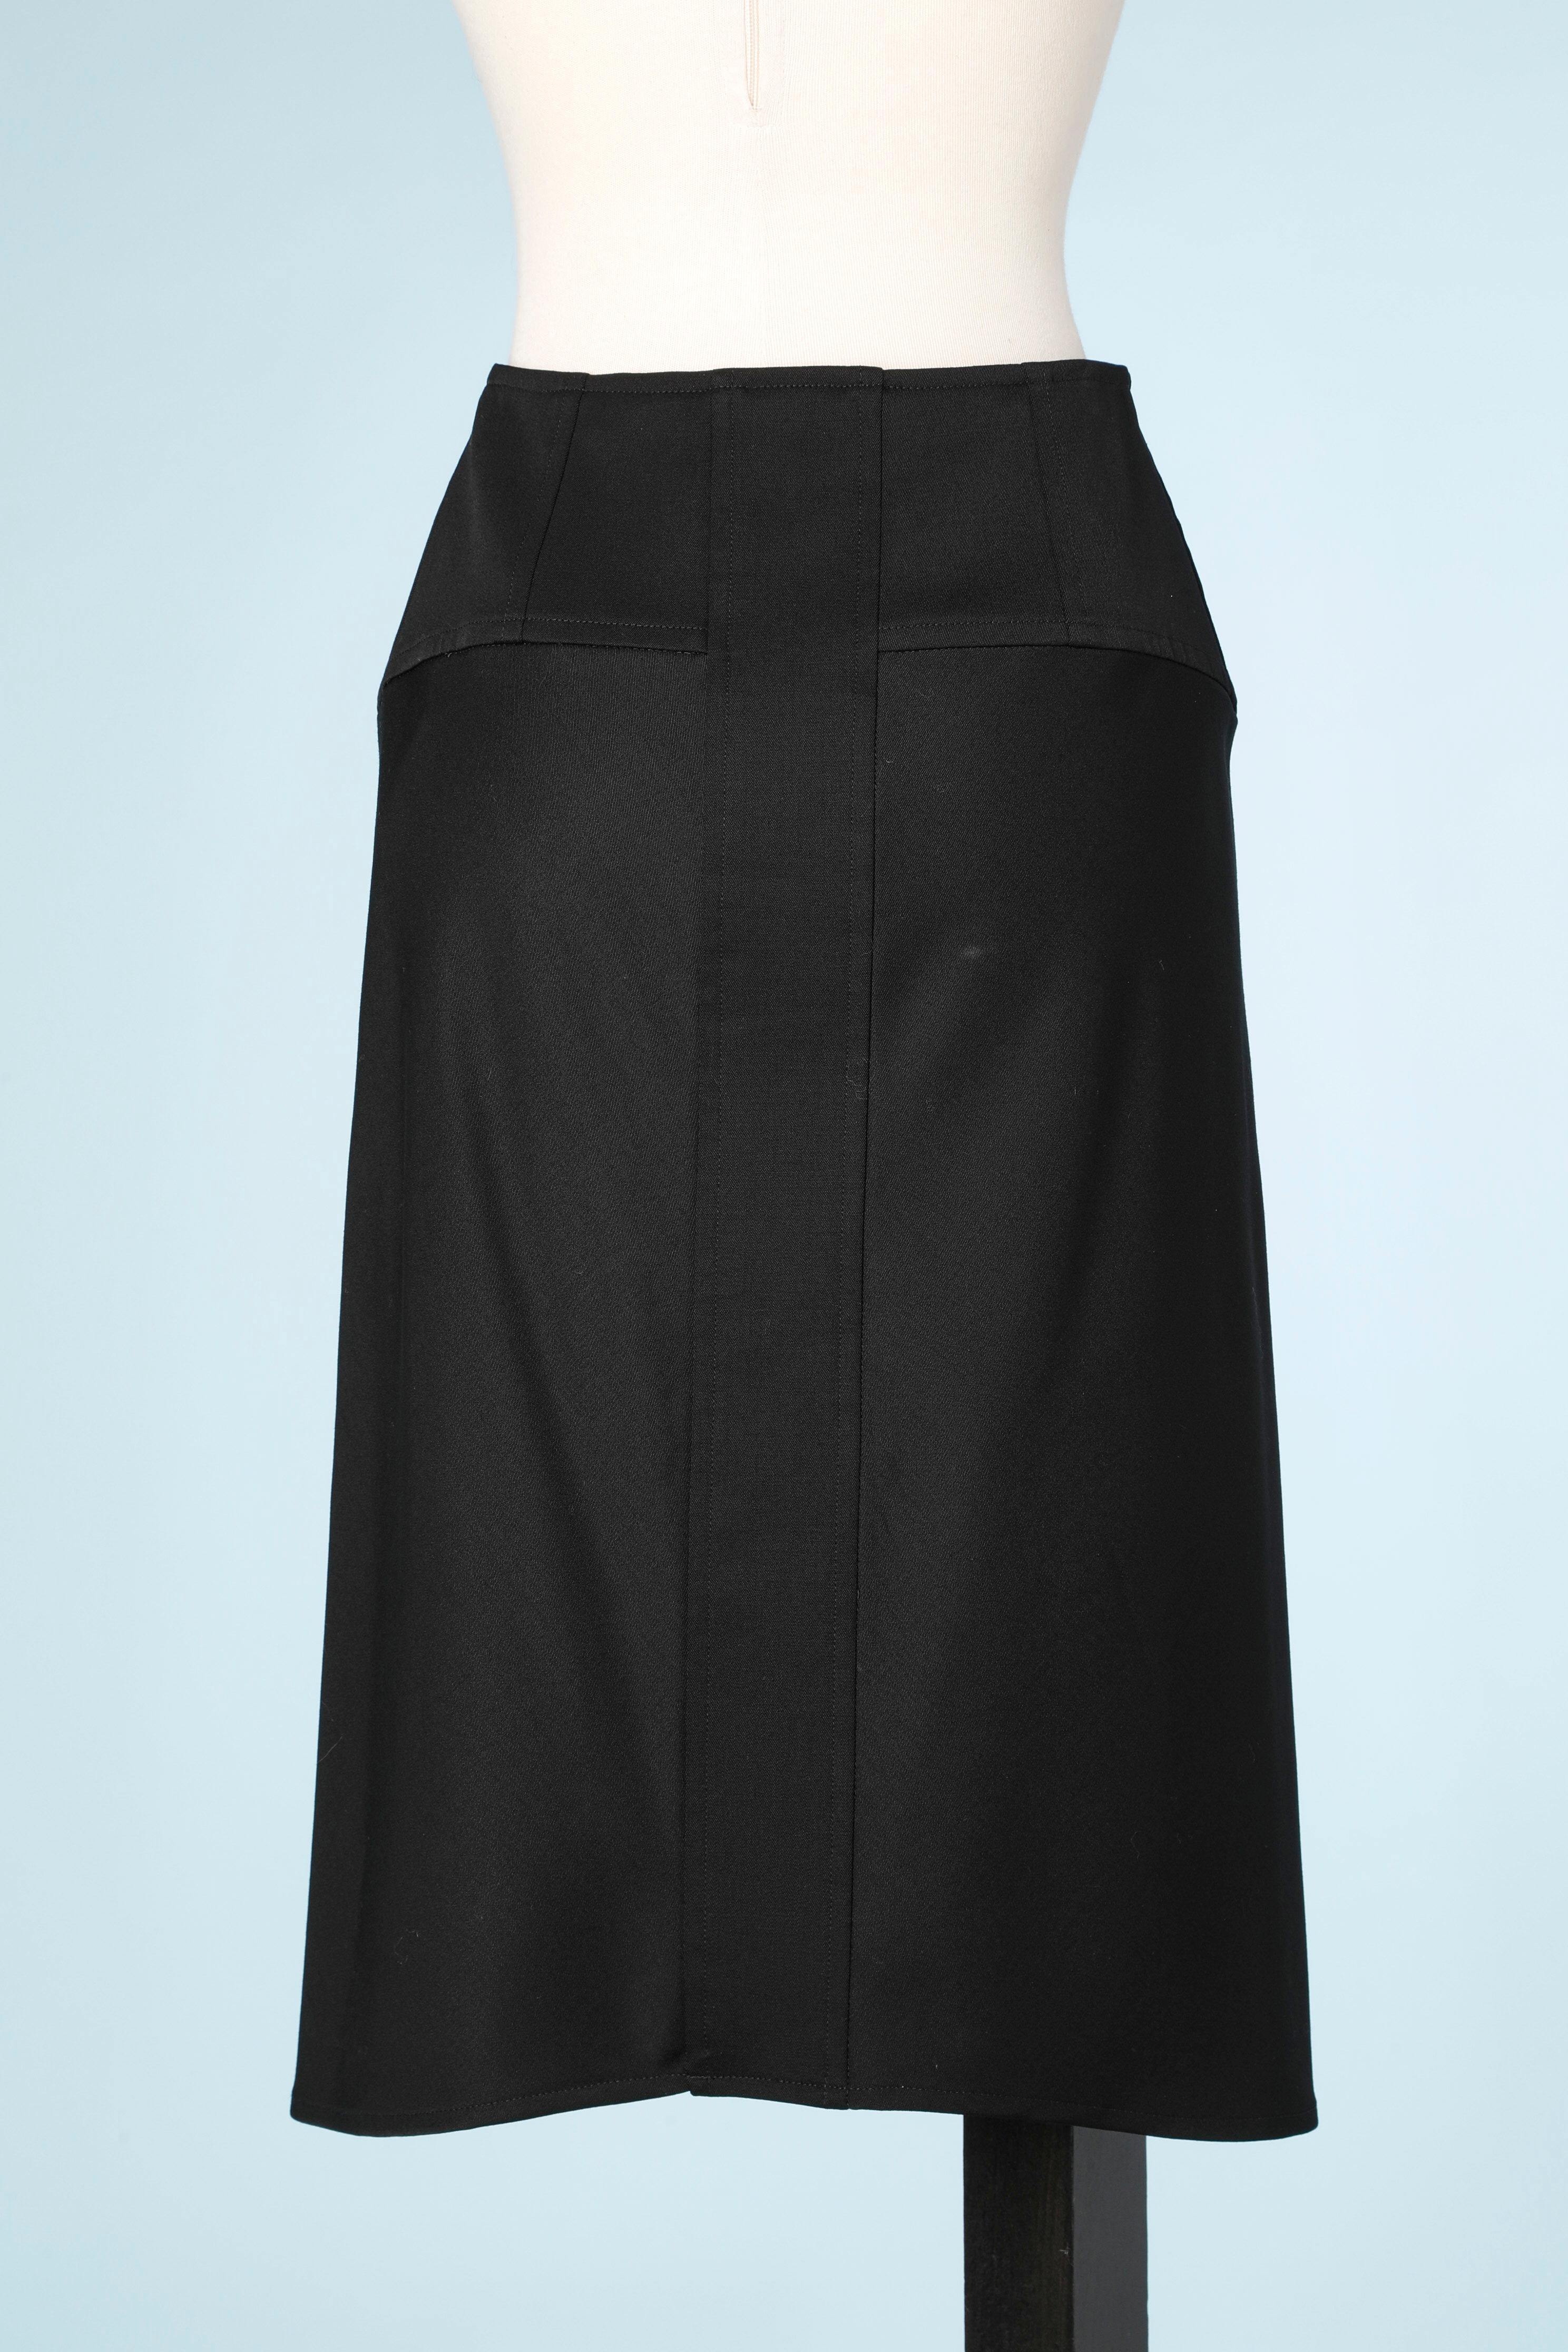 Black wool skirt Yves Saint Laurent Rive Gauche  For Sale 1